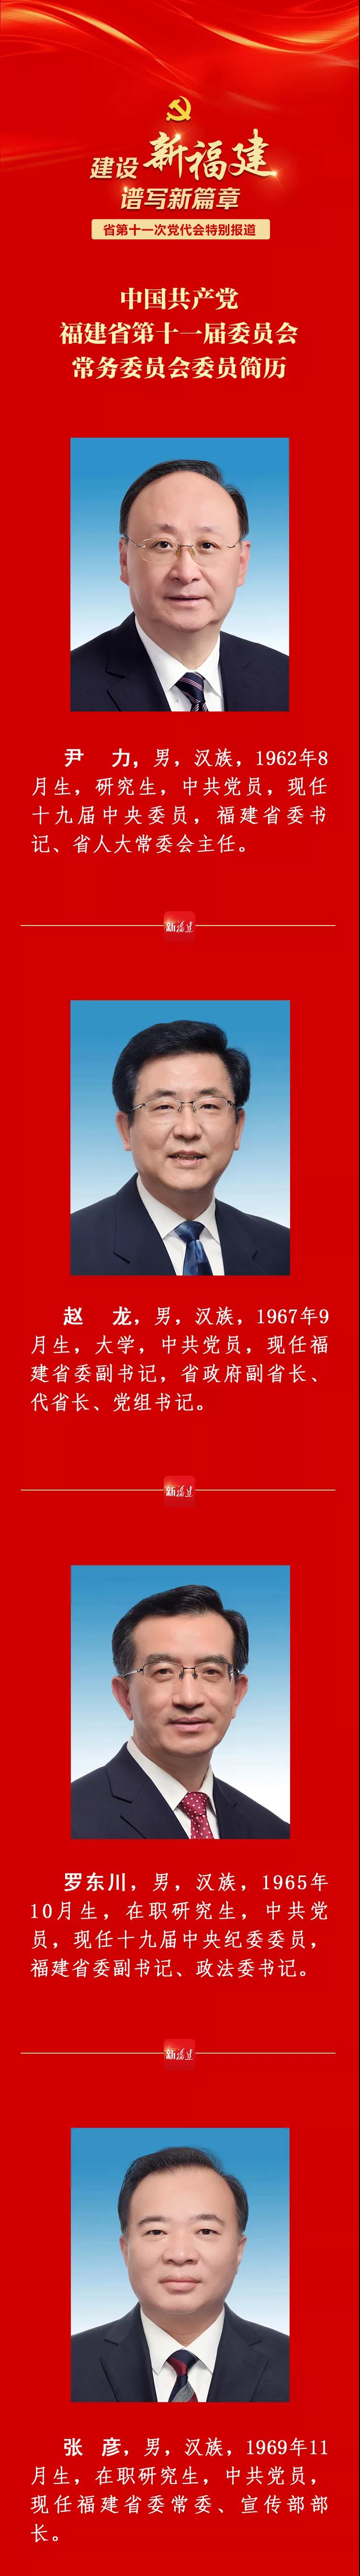 福建省现任省委书记图片